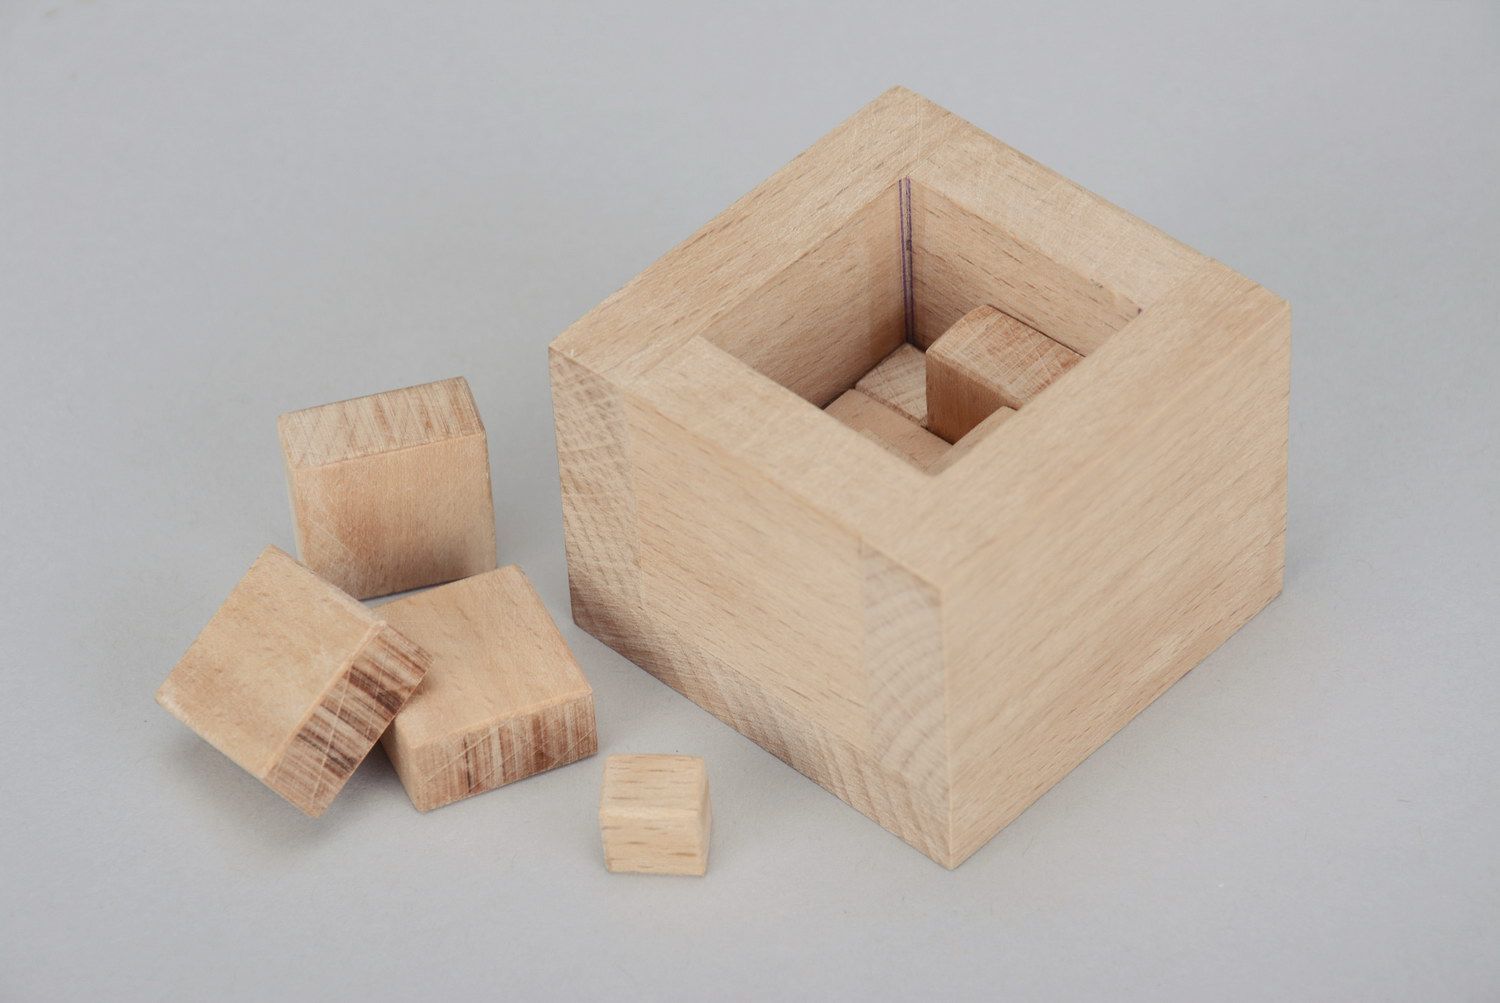 Rompicapo in legno di Singmaster fatto a mano giocattolo di legno idea regalo foto 3